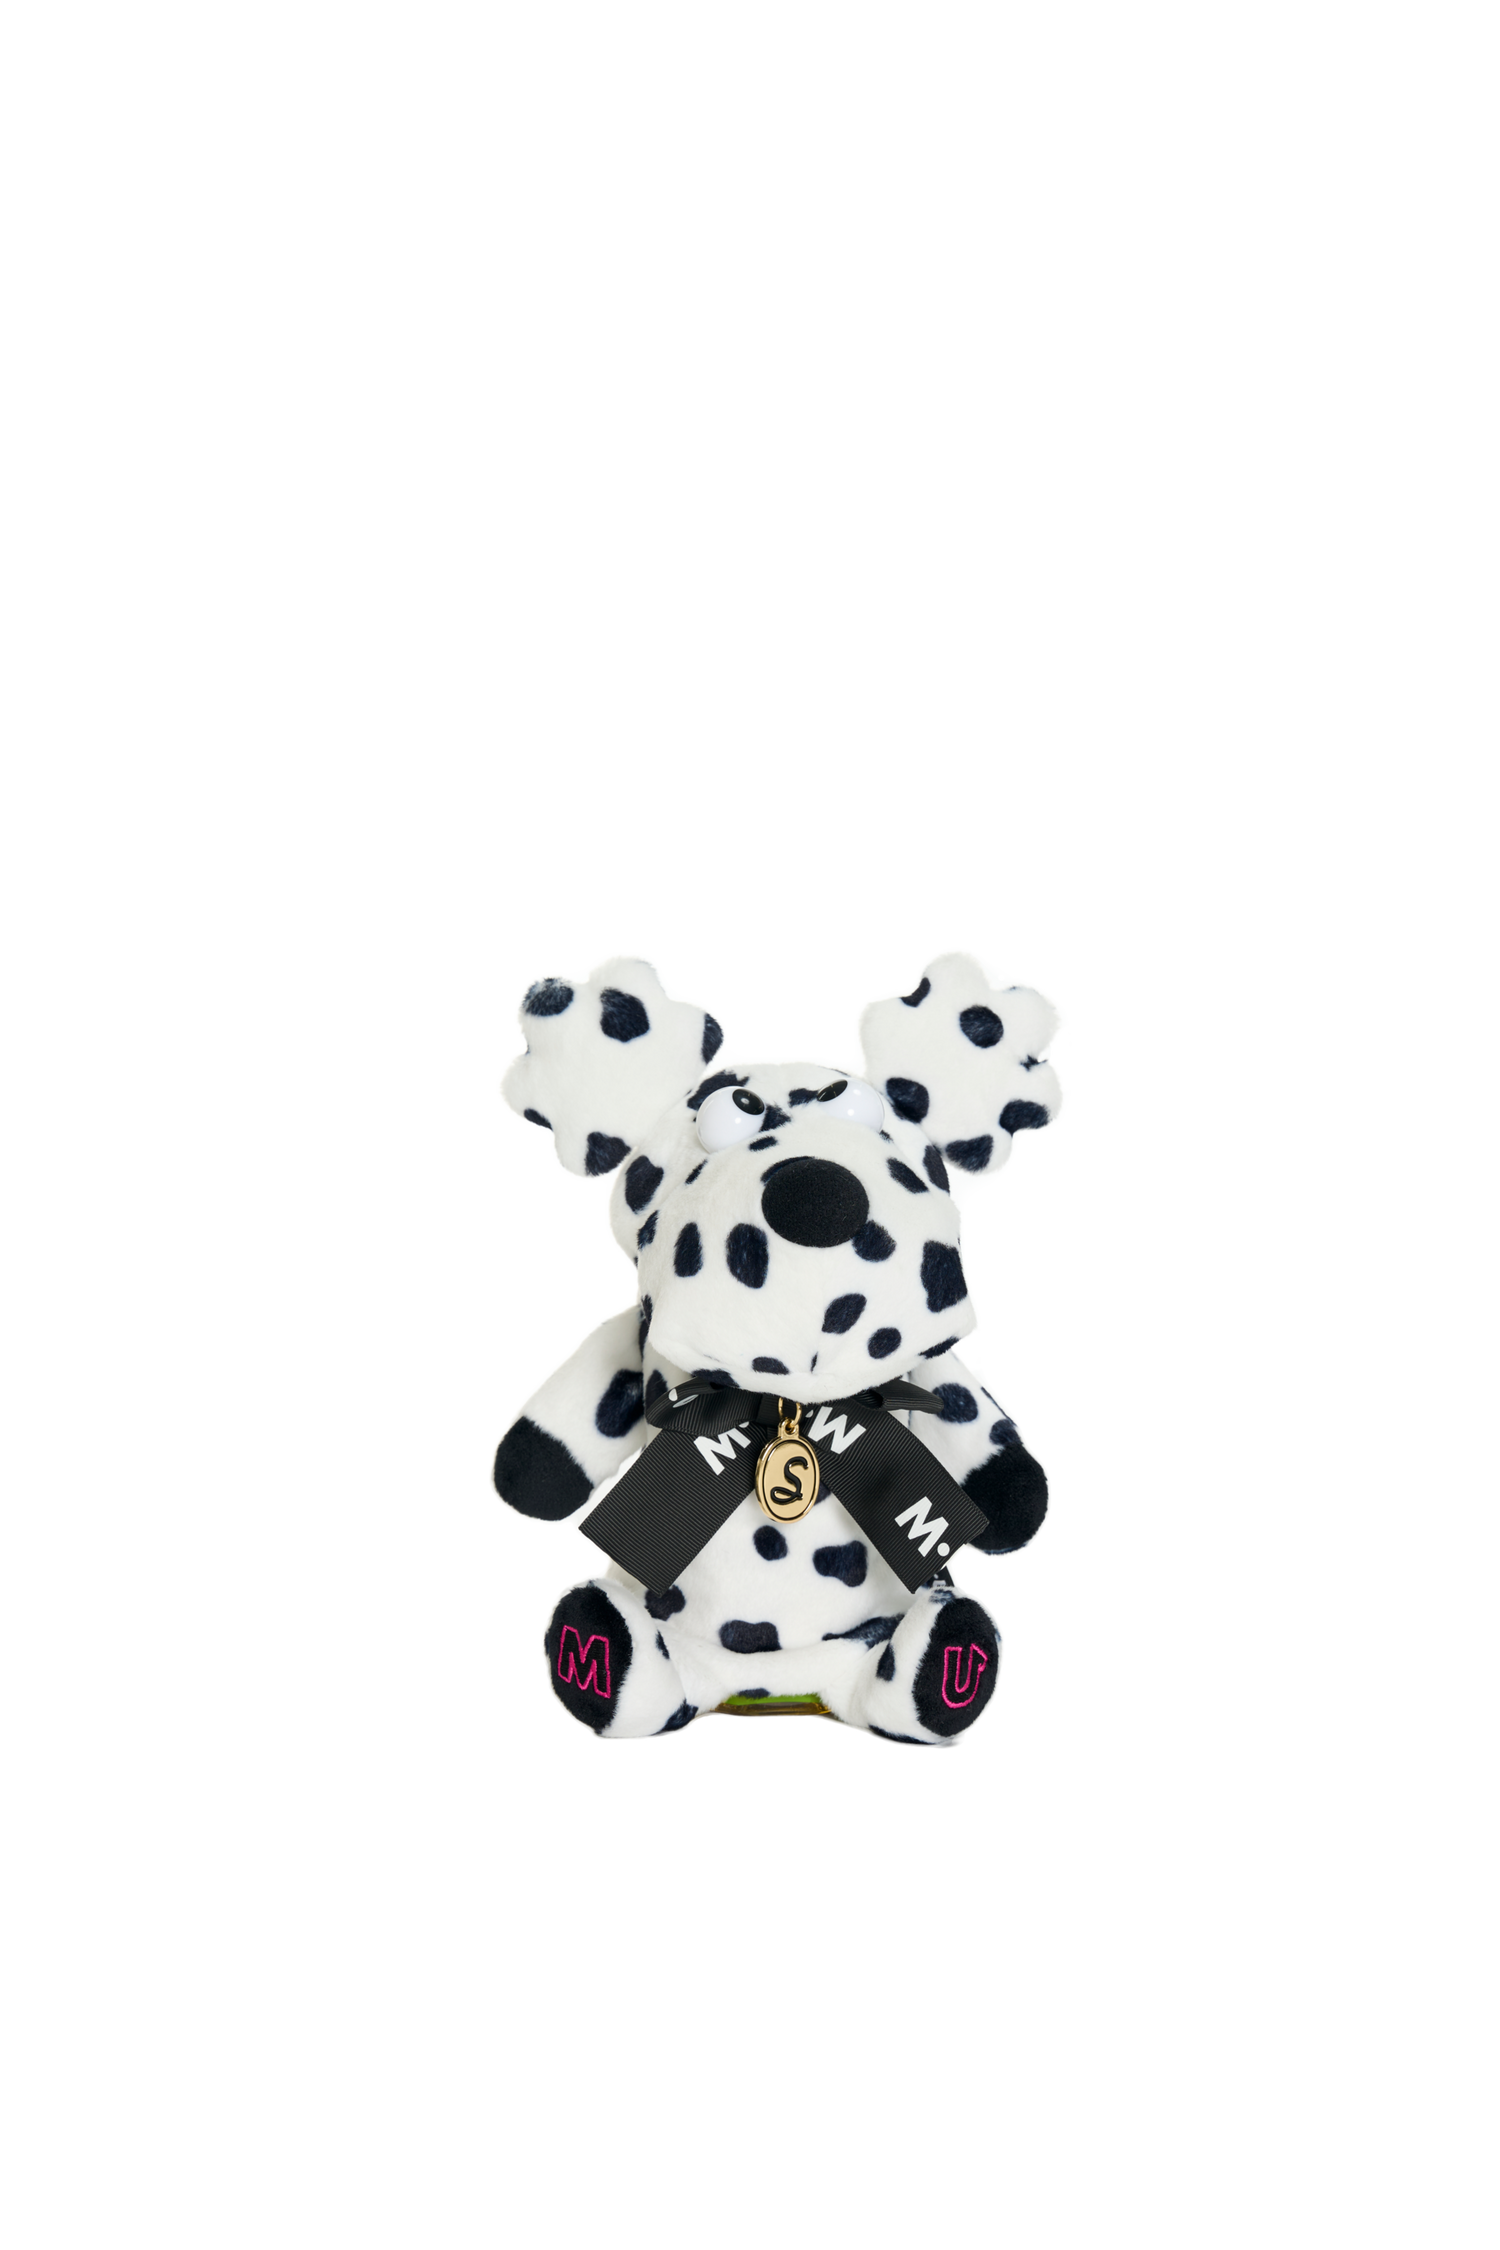 Dalmatian pattern ShuShu utility cover (703H6558)